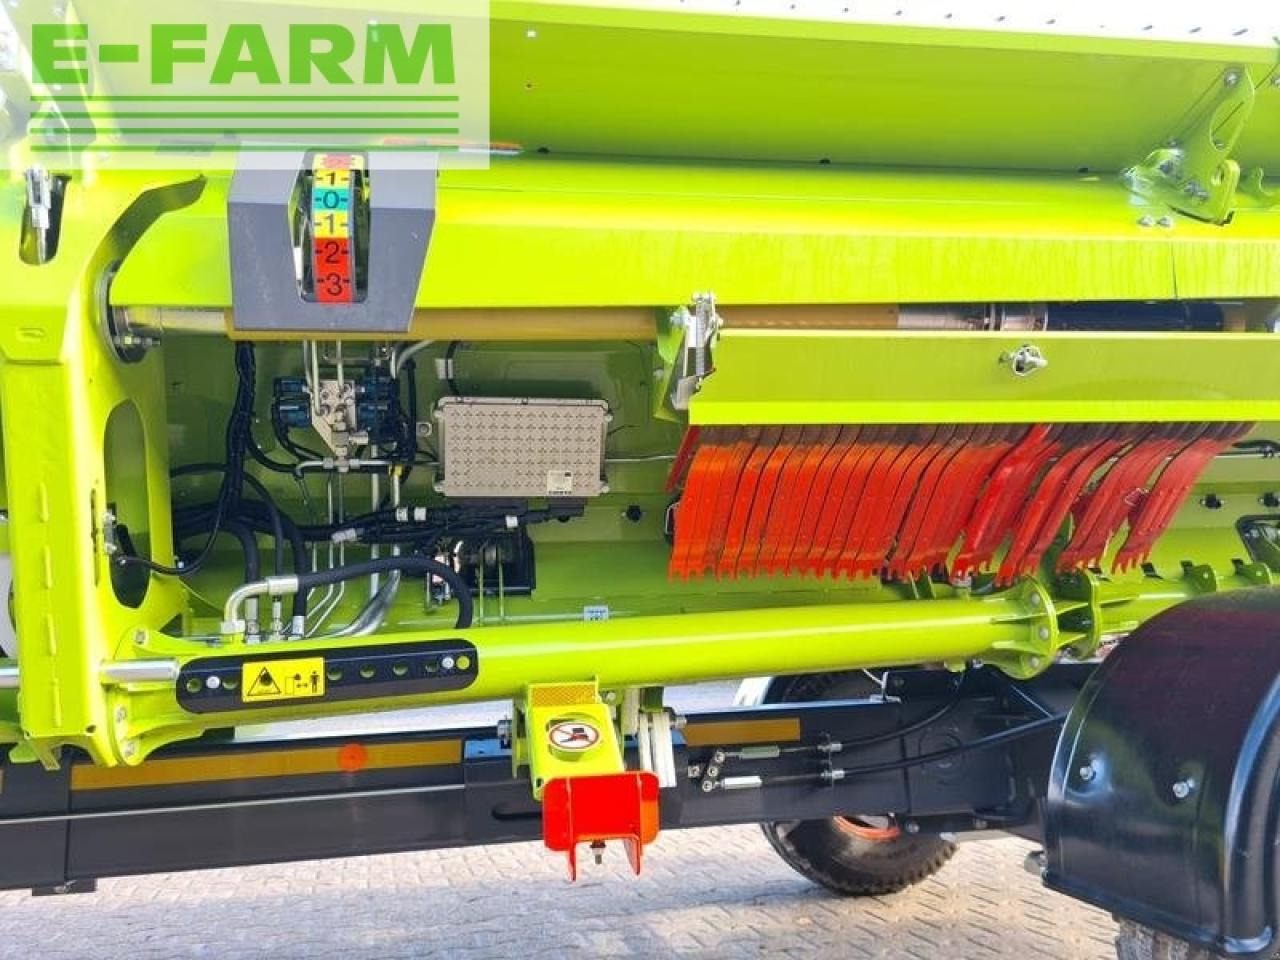 Farm tractor CLAAS lexion 7500